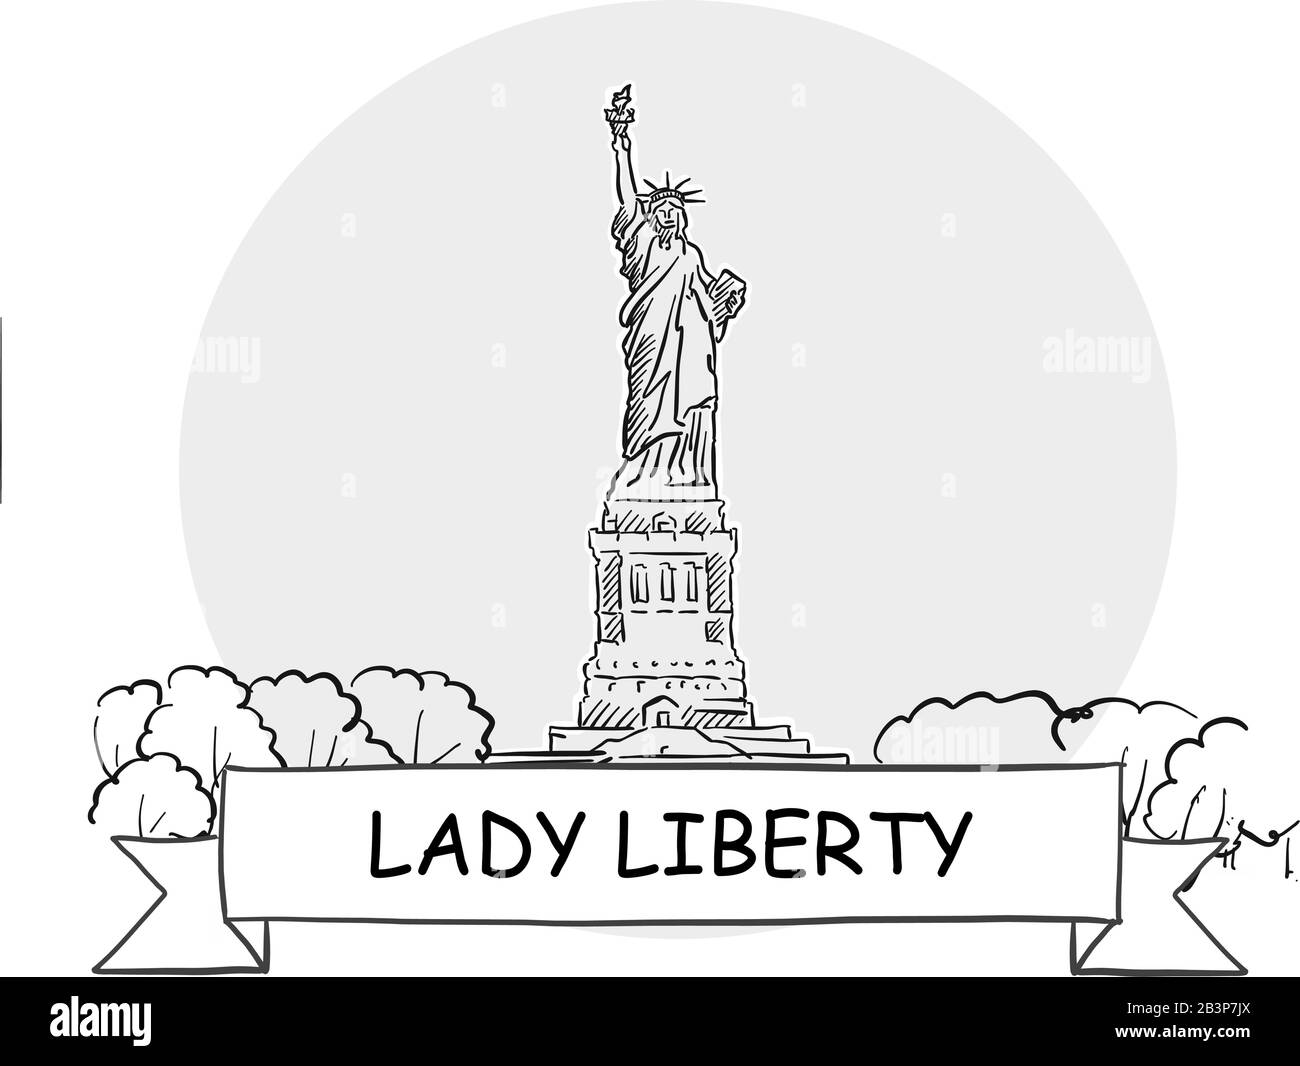 Panneau Vectoriel Lady Liberty Cityscape. Illustration d'un dessin au trait avec ruban et titre. Illustration de Vecteur